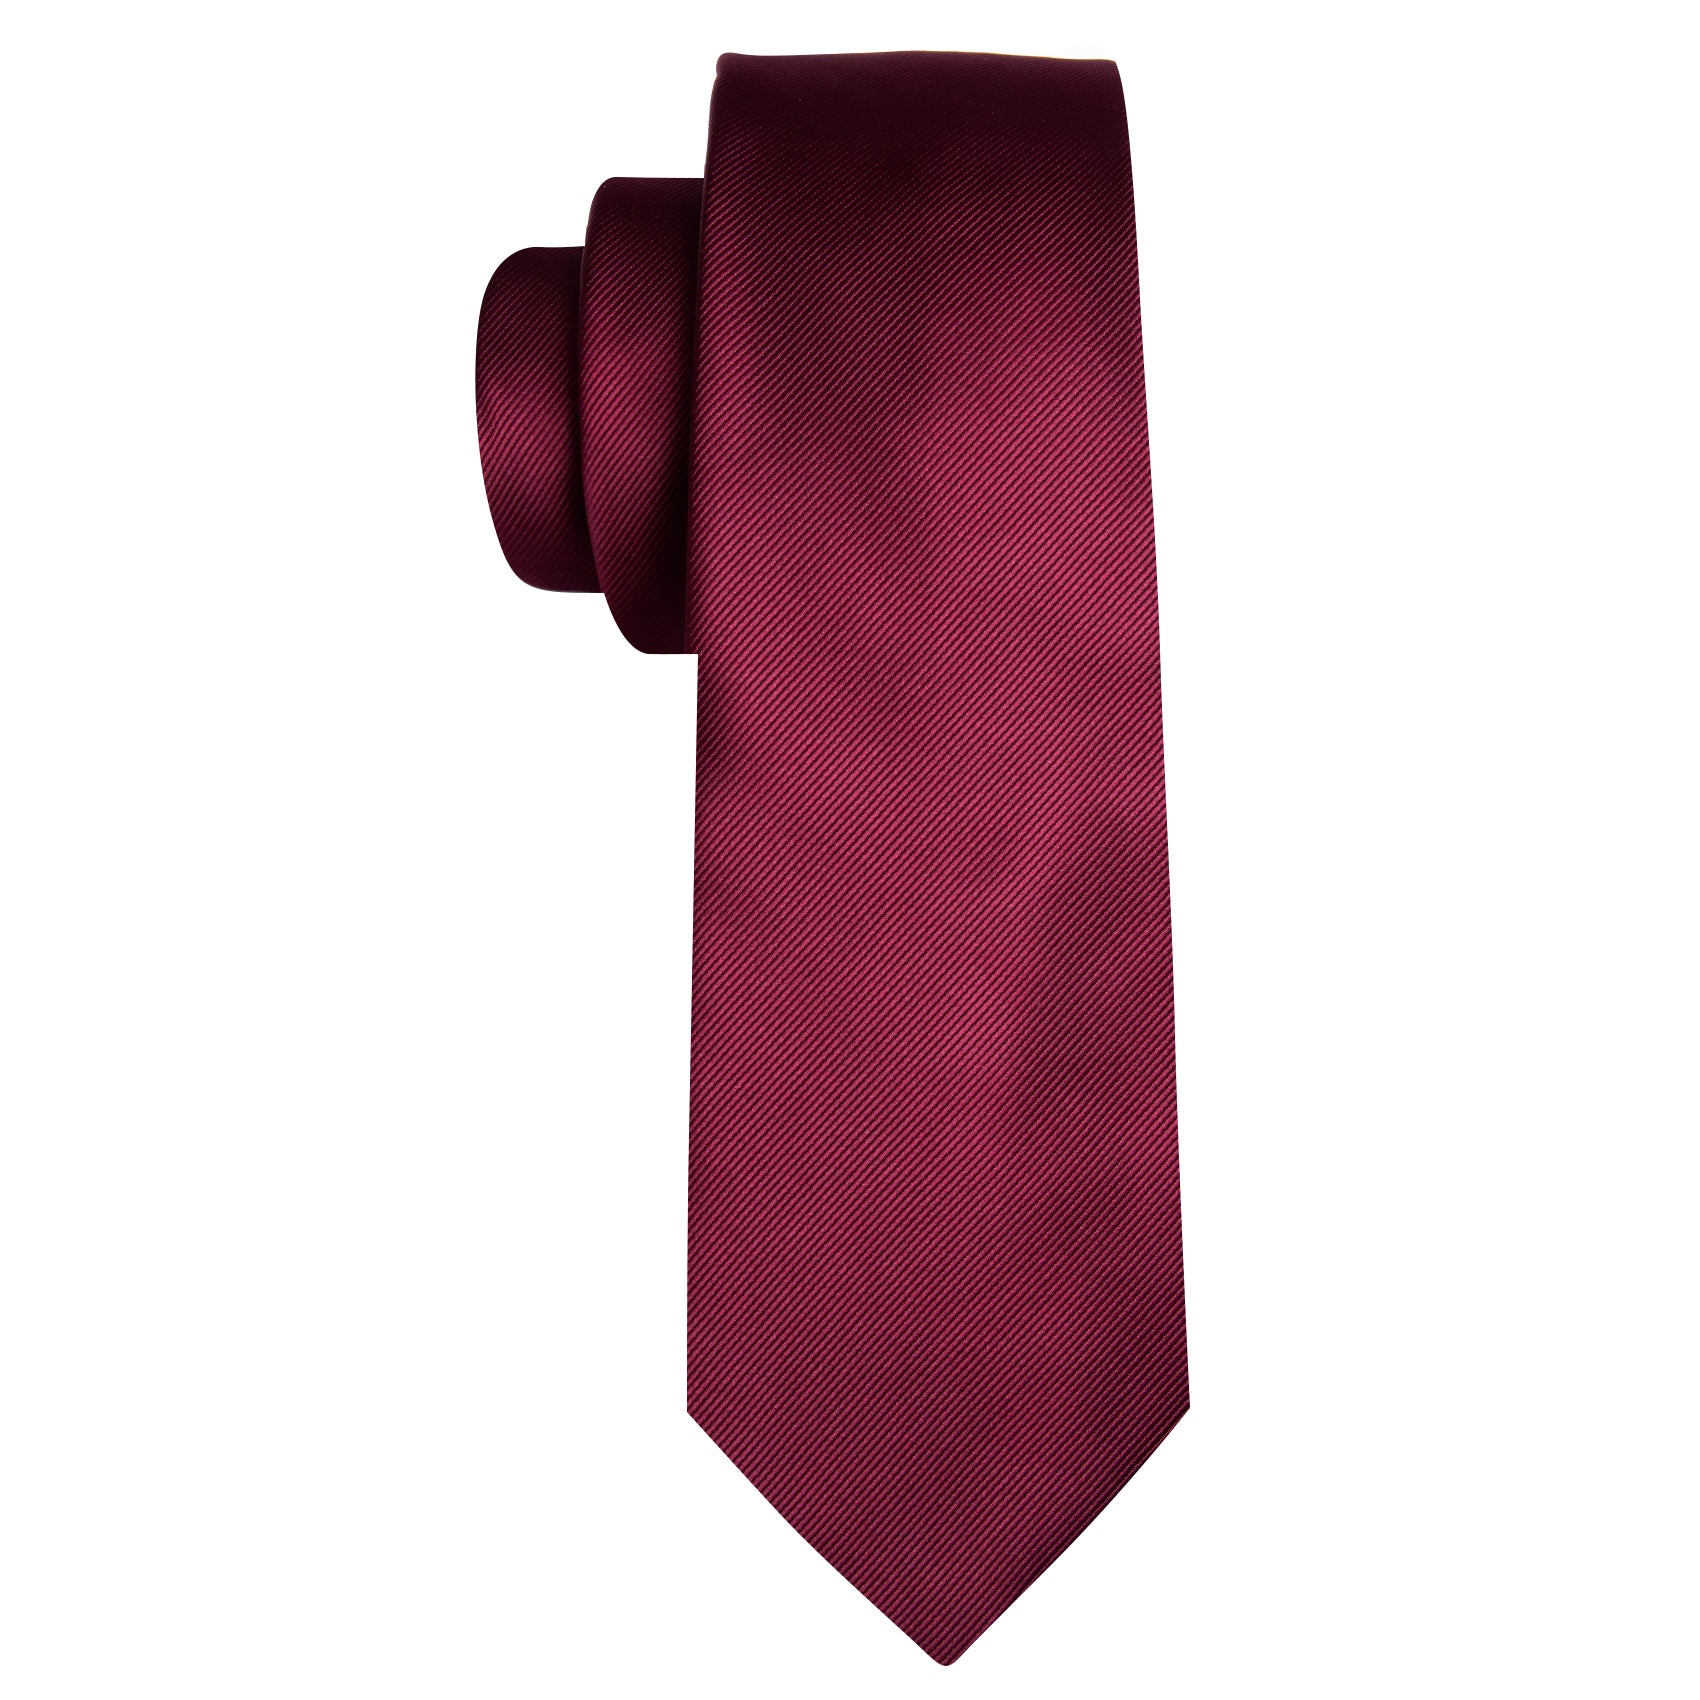 Bright Dark Red Solid Silk Tie Pocket Square Cufflinks Set